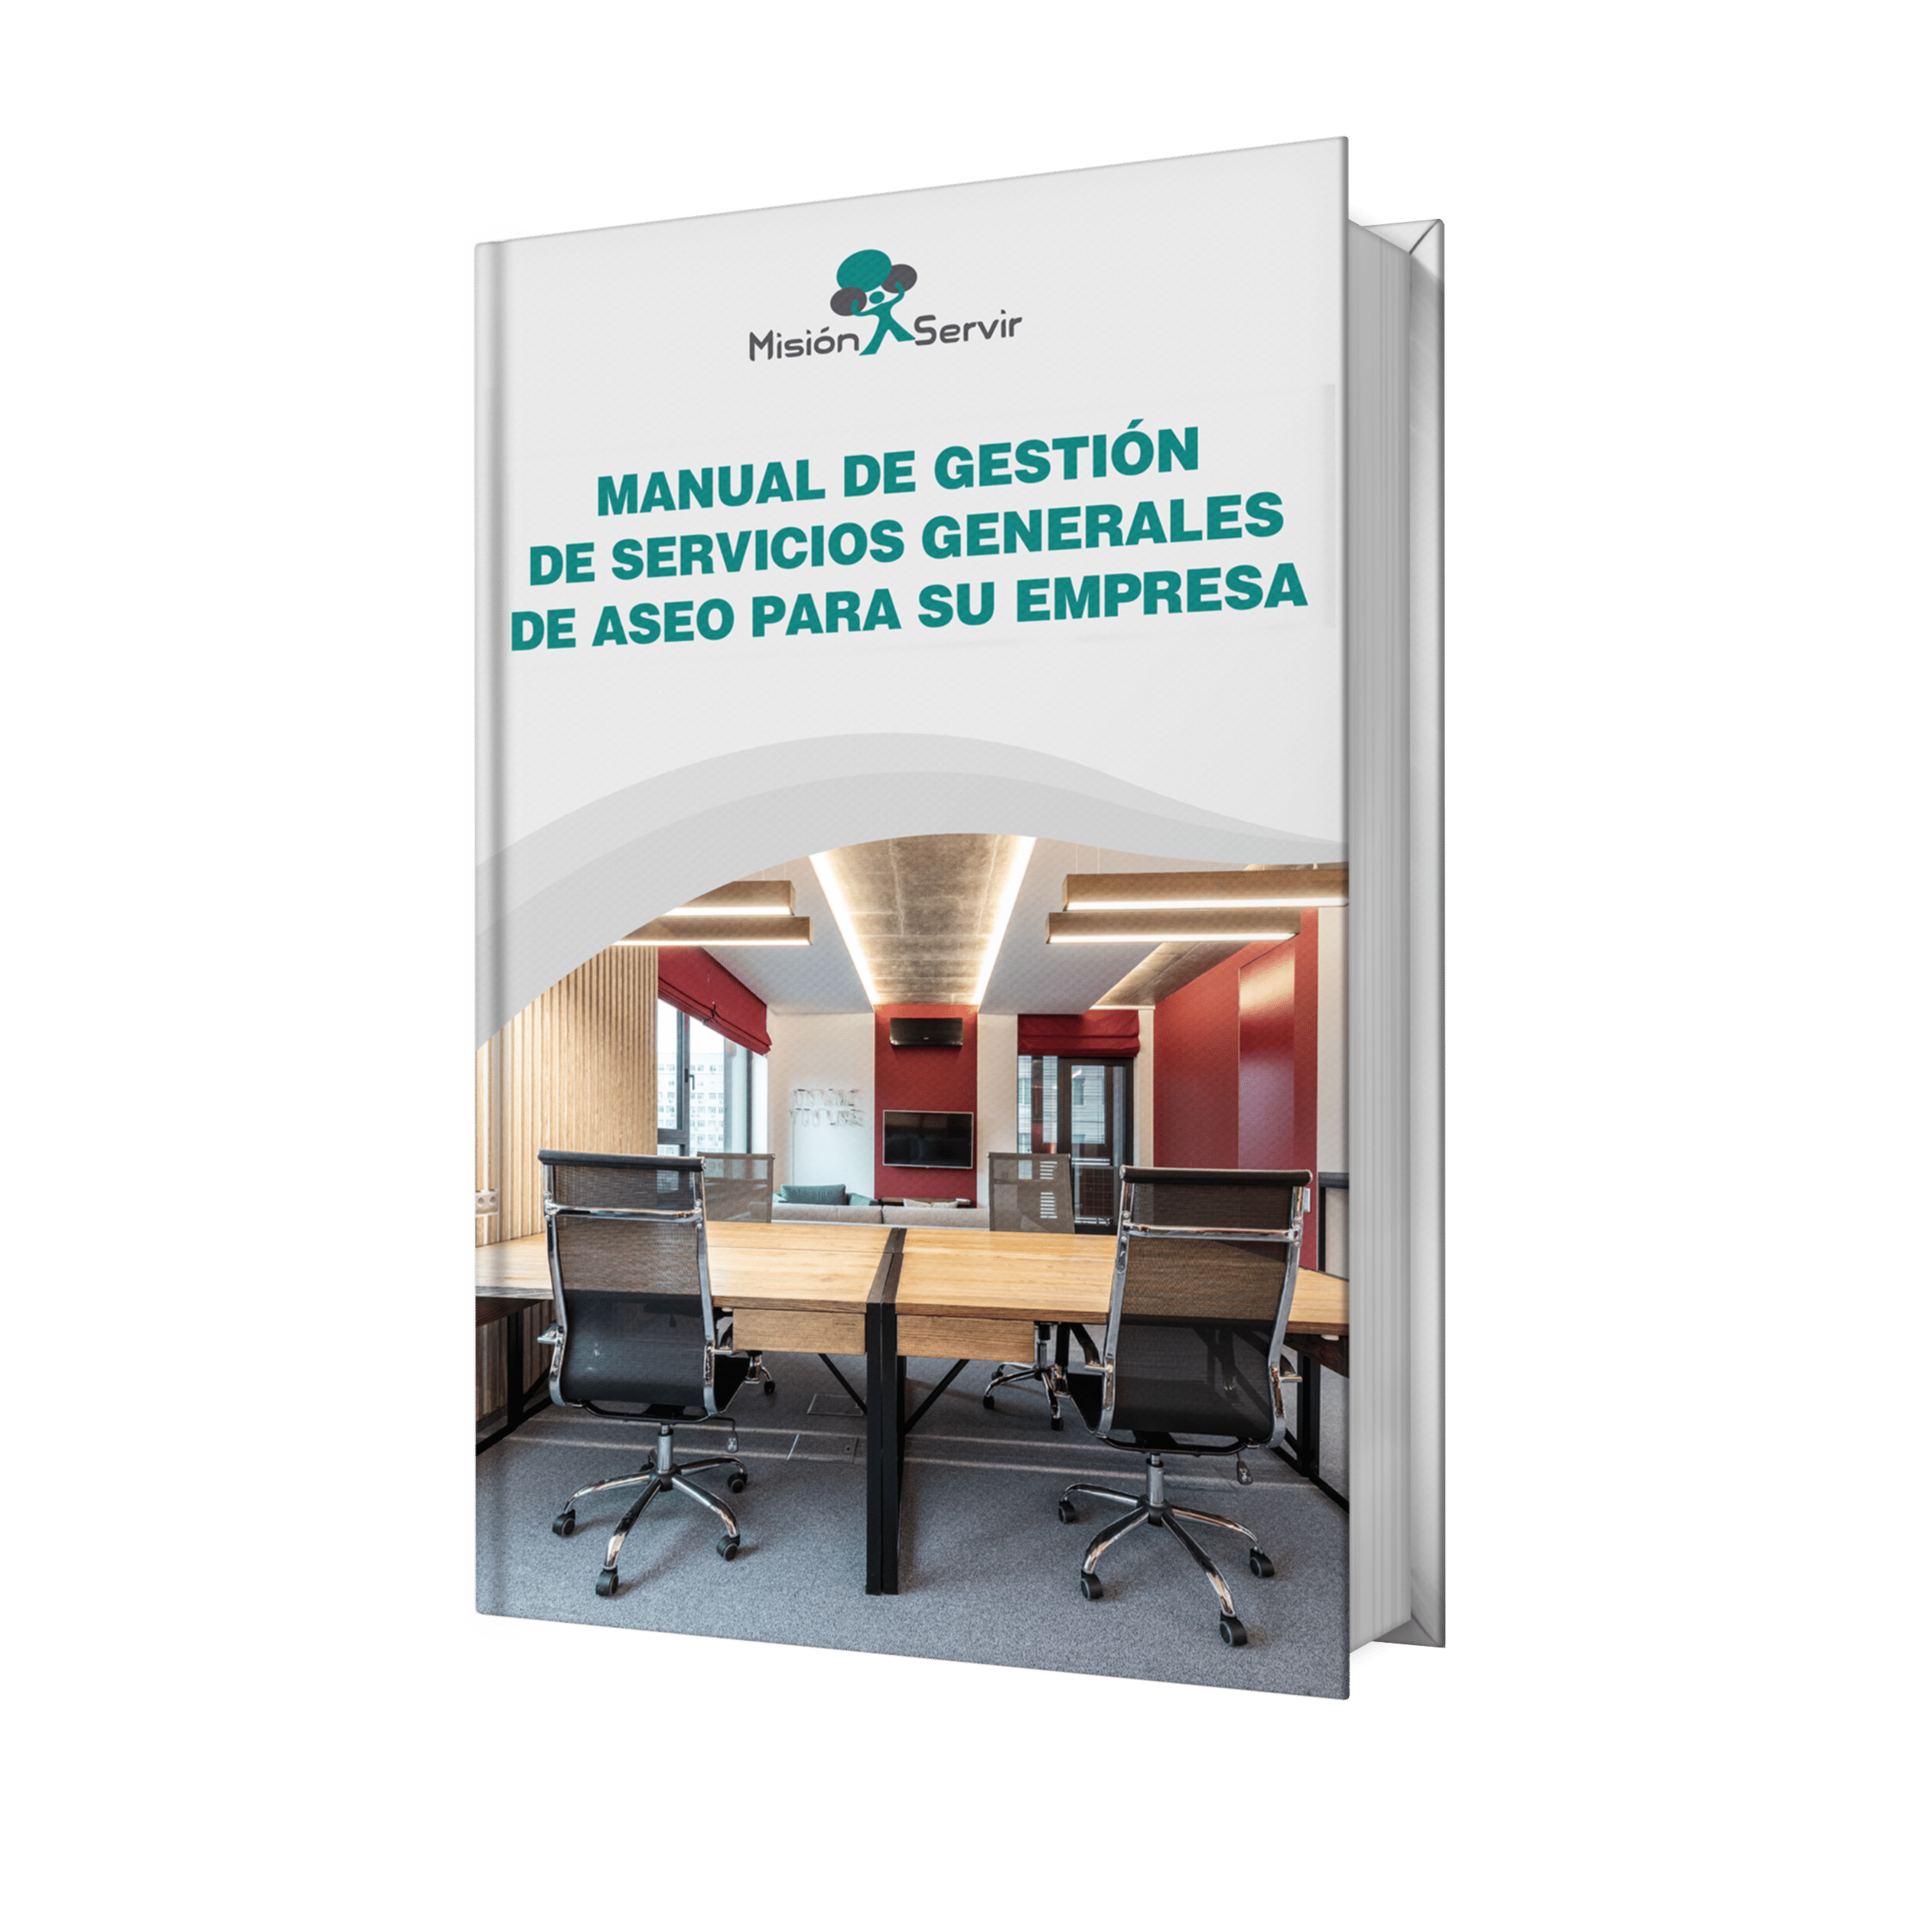 Manual de gestión de servicios generales de aseo para su empresa - Misión Servir